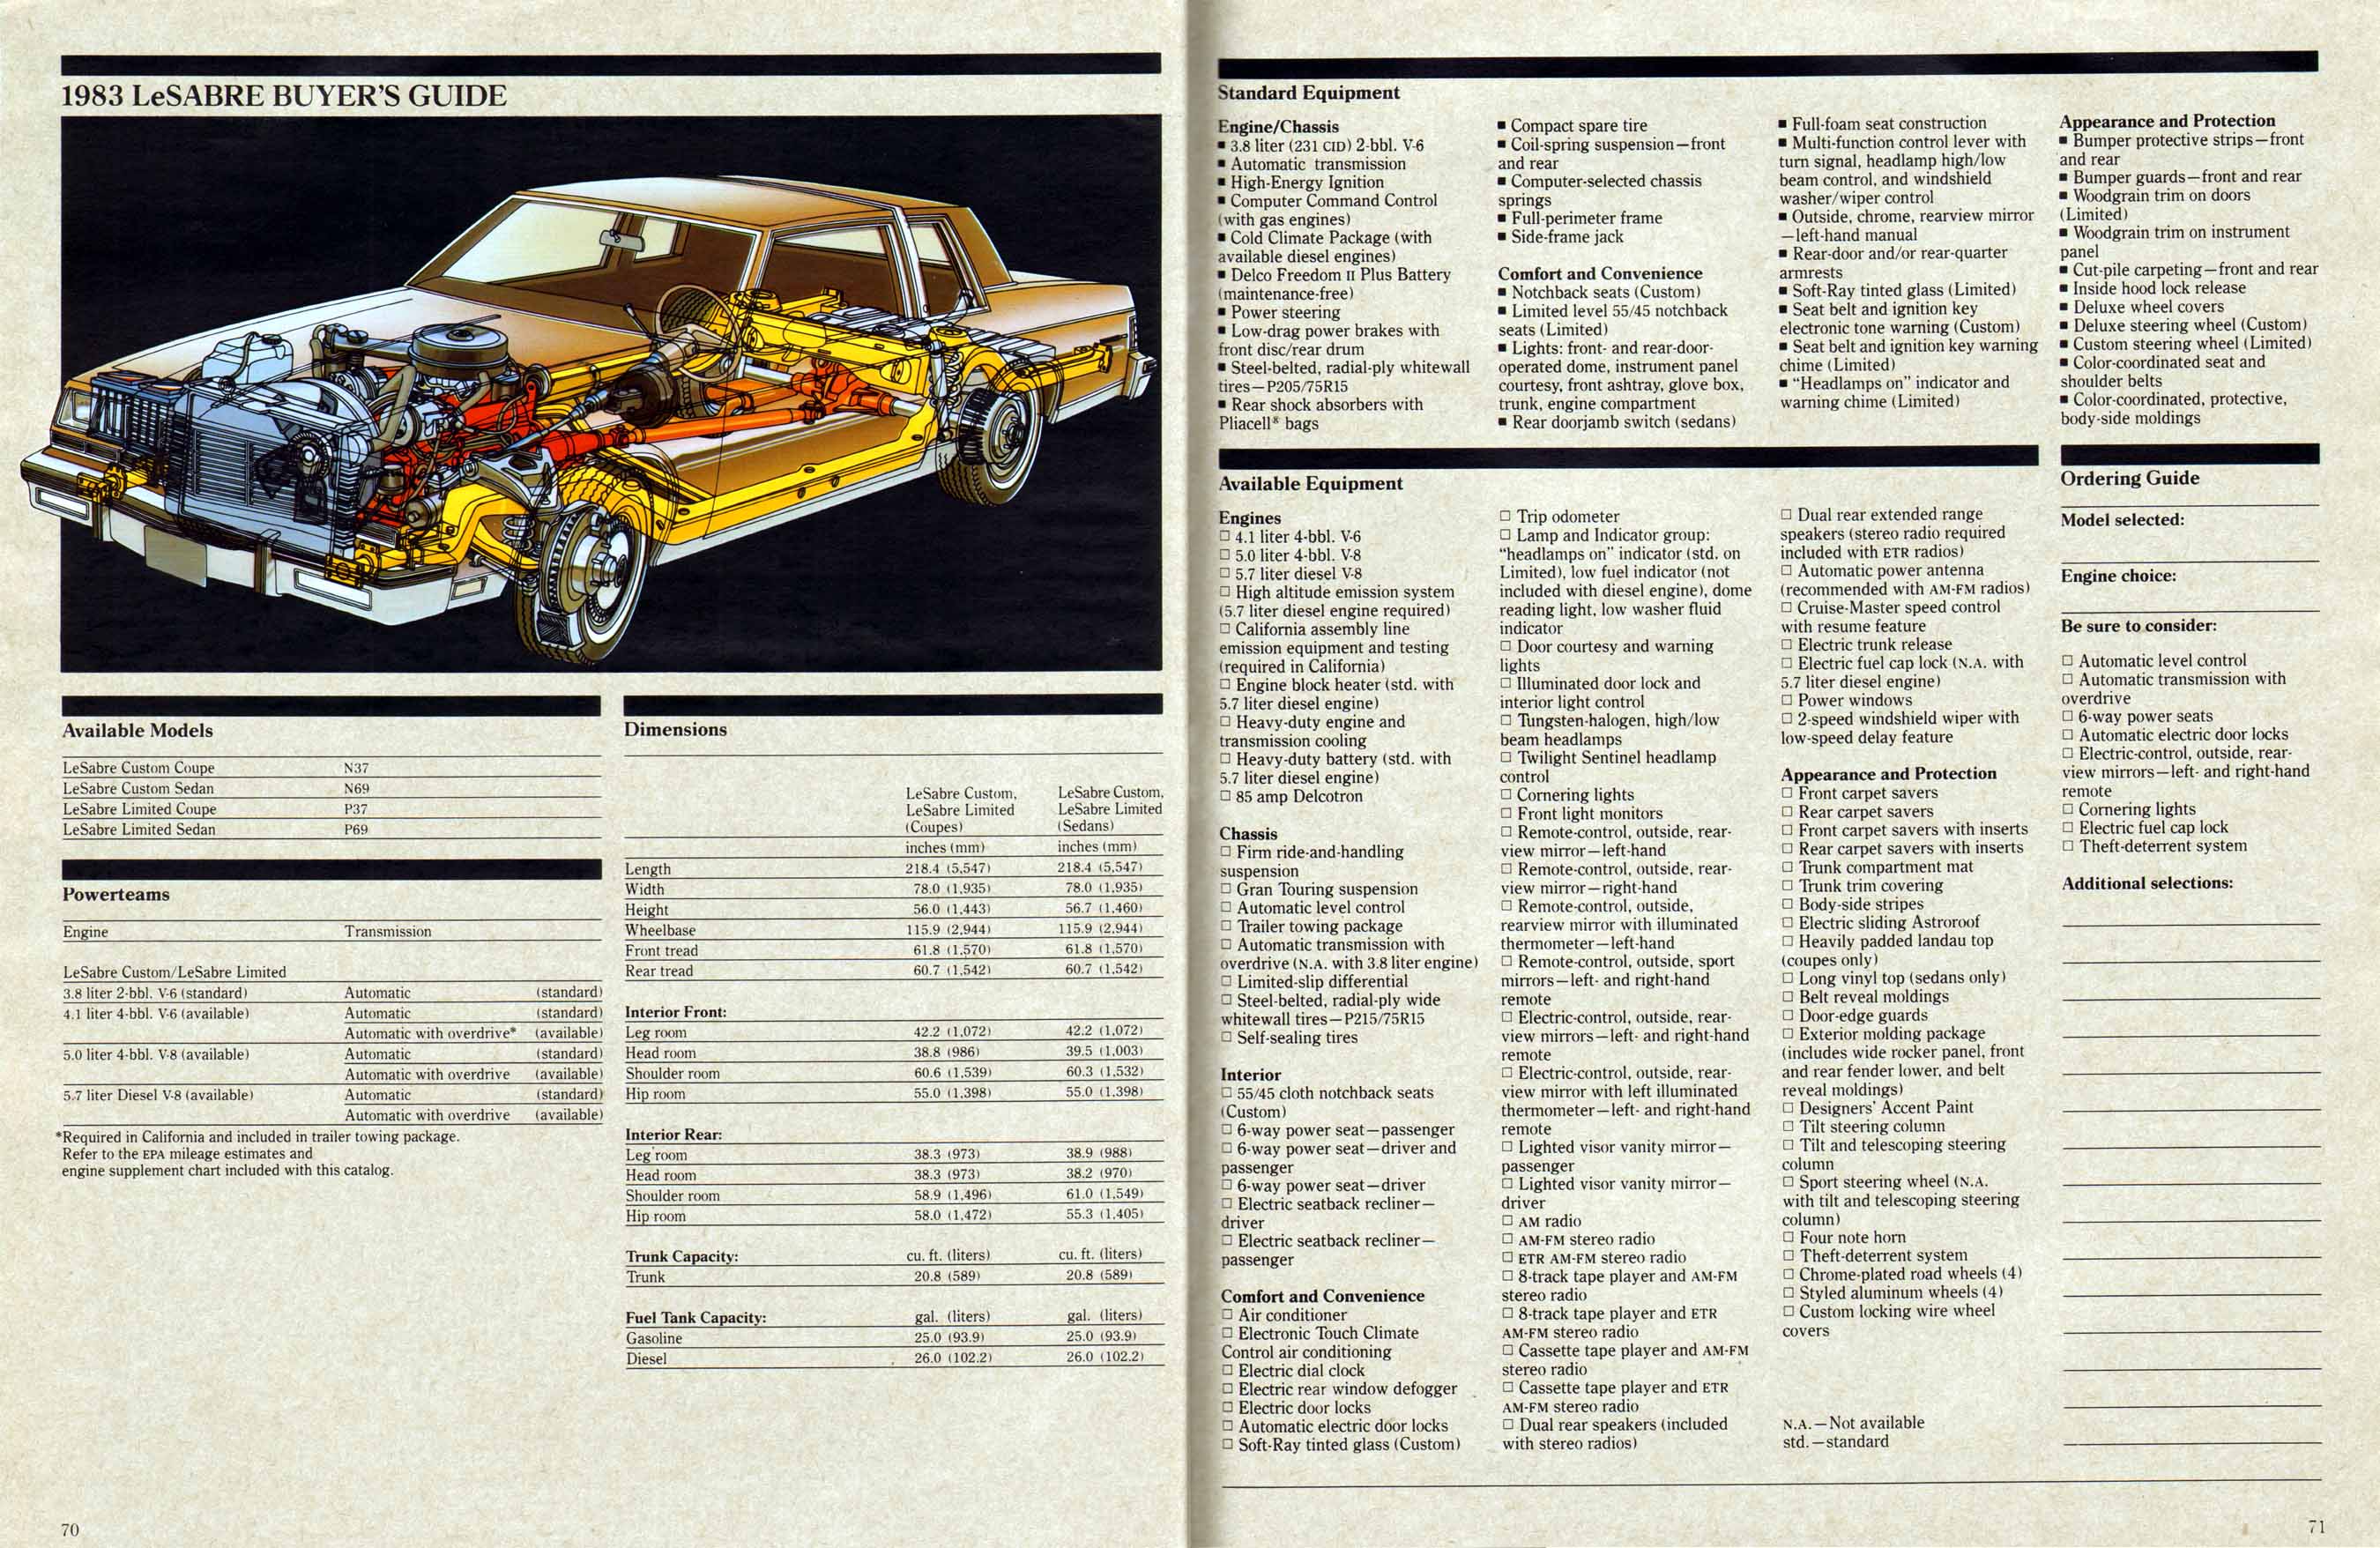 1983 Buick Full Line Prestige-70-71